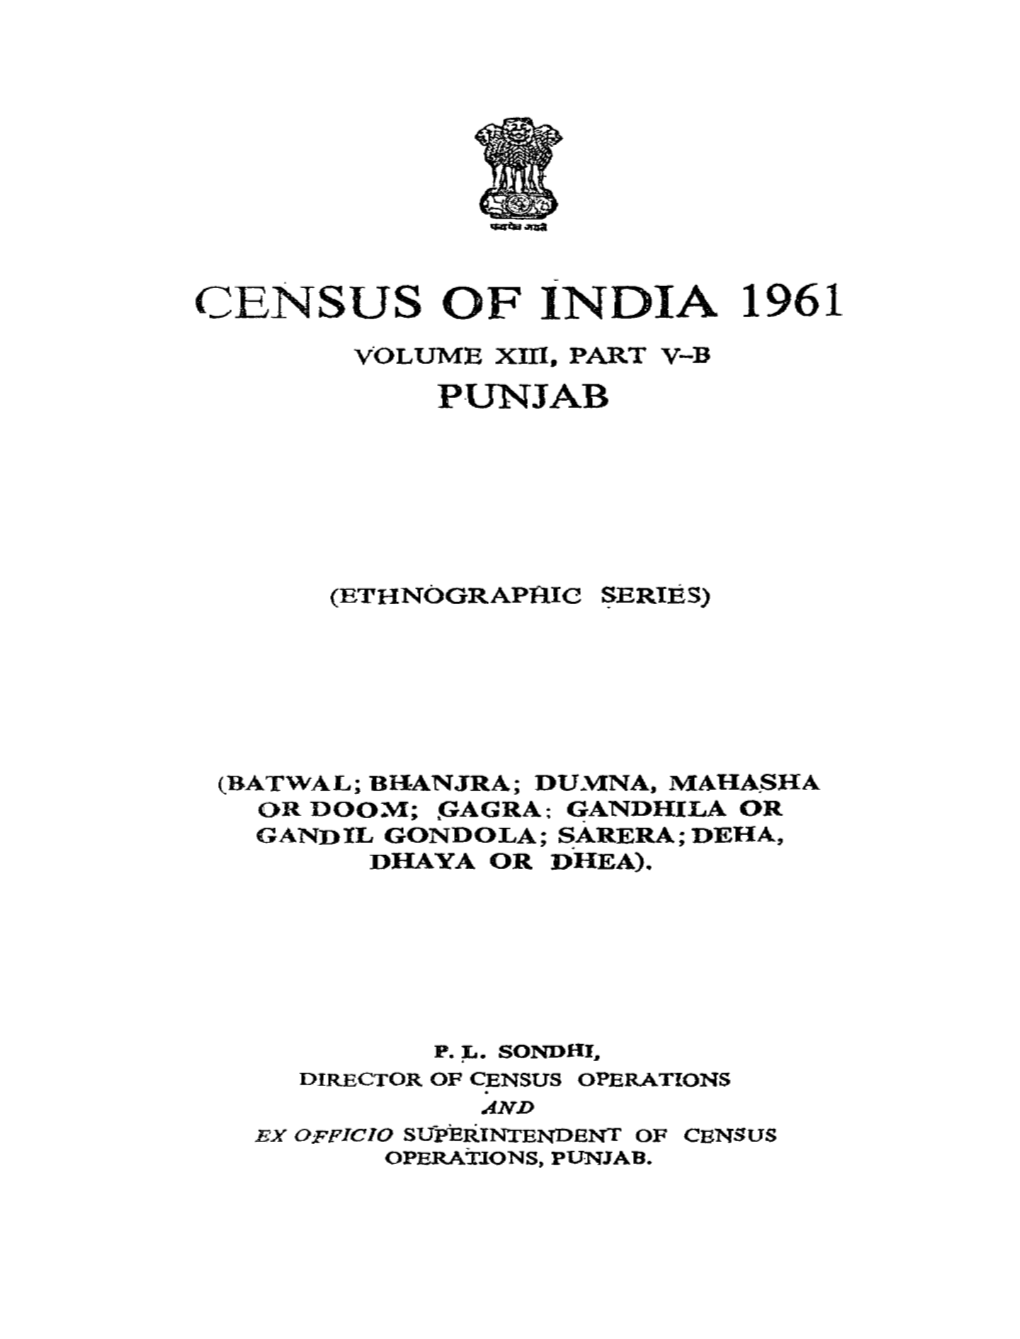 Ethnographic Series, Part-V-B, Vol-XIII, Punjab